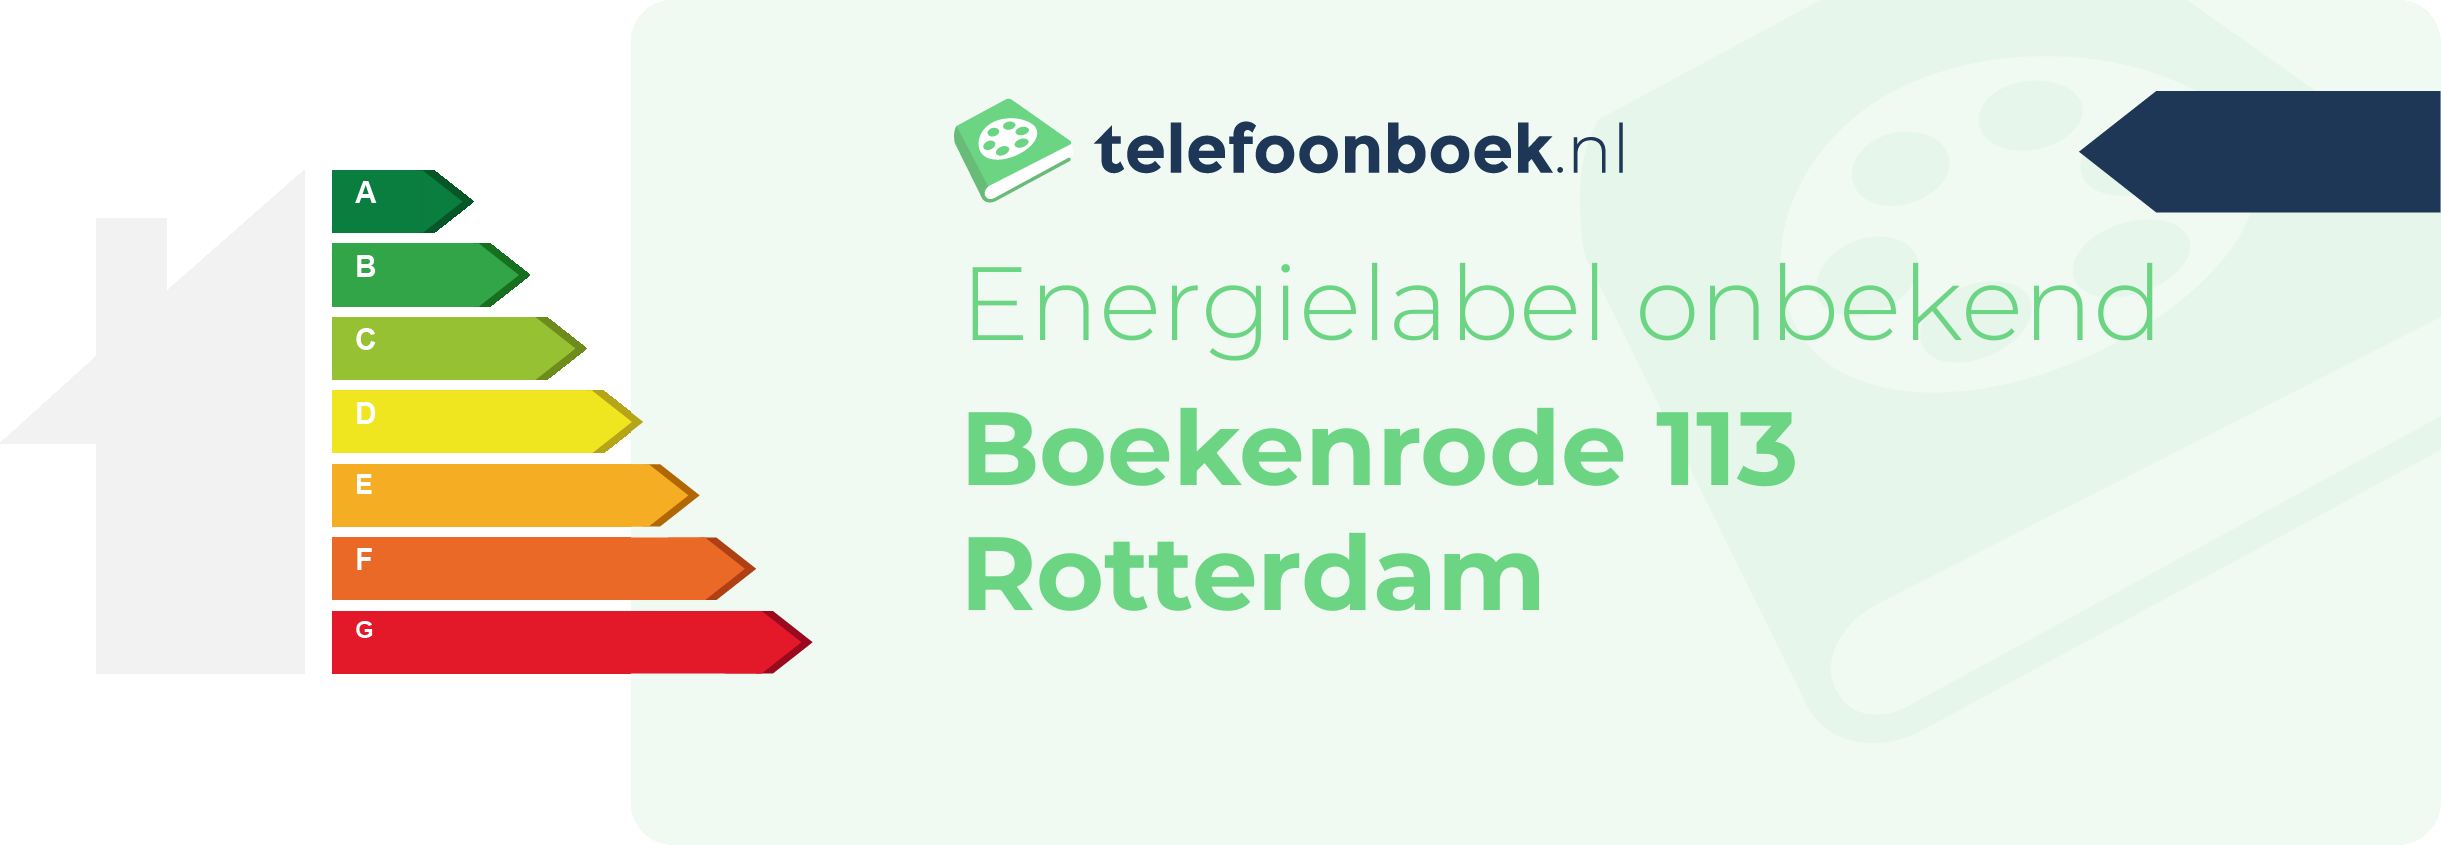 Energielabel Boekenrode 113 Rotterdam